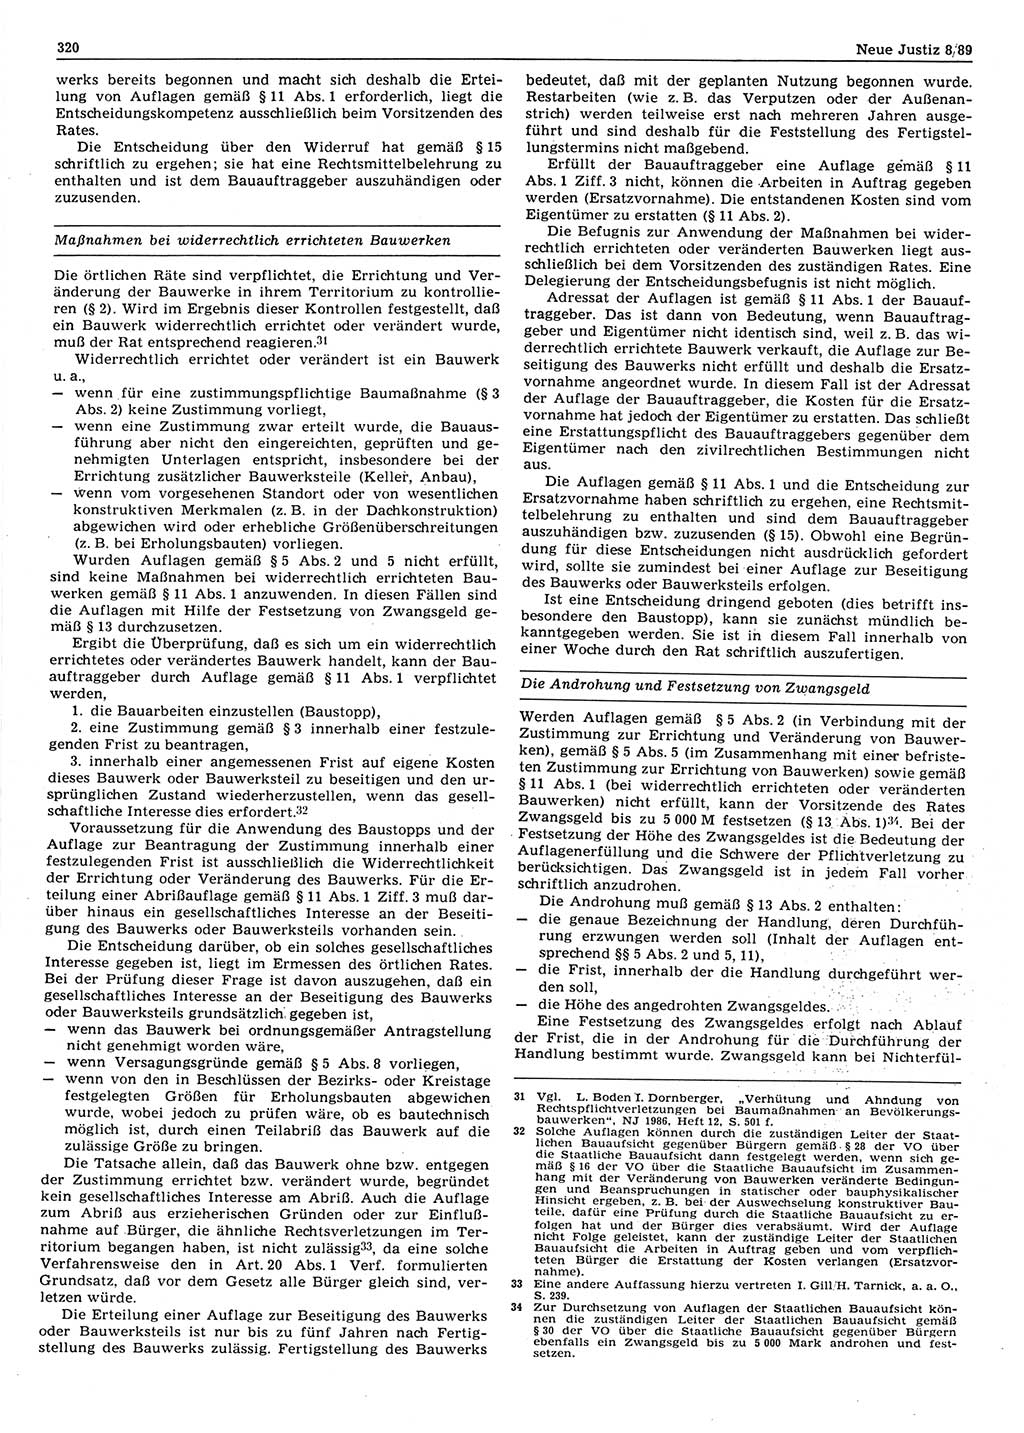 Neue Justiz (NJ), Zeitschrift für sozialistisches Recht und Gesetzlichkeit [Deutsche Demokratische Republik (DDR)], 43. Jahrgang 1989, Seite 320 (NJ DDR 1989, S. 320)